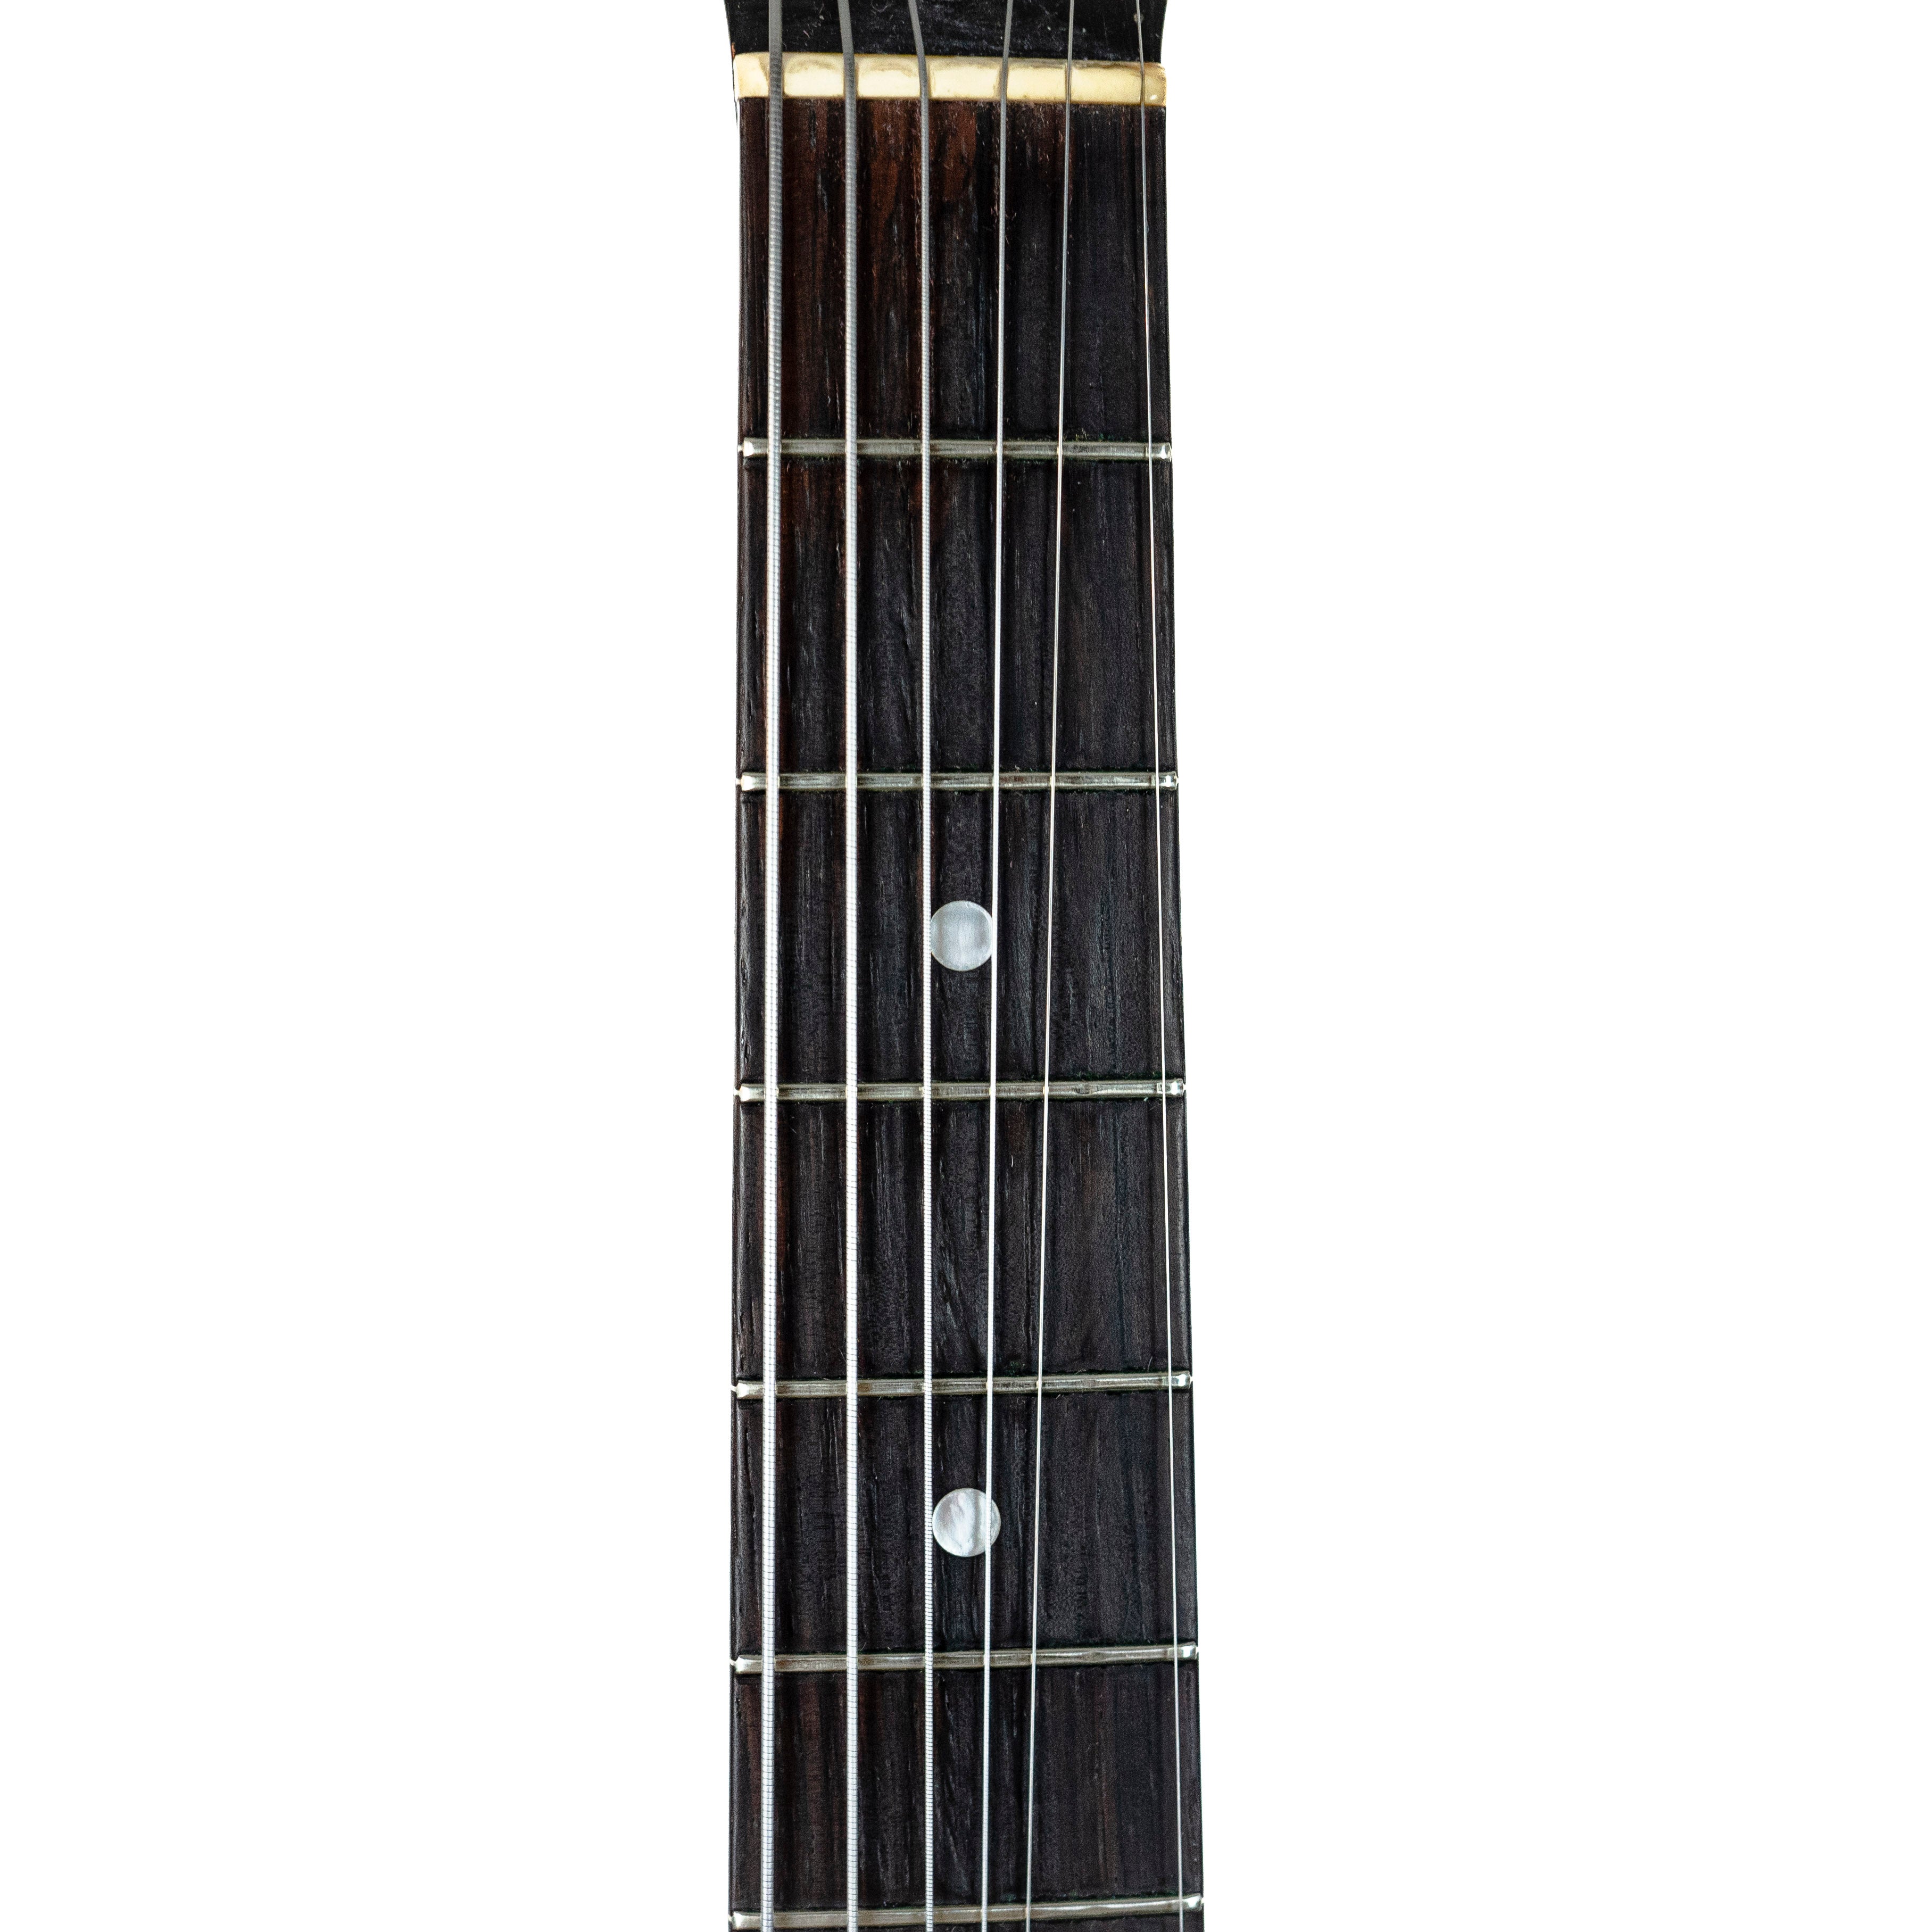 Gibson 1952 ES-140 3/4 Sunburst